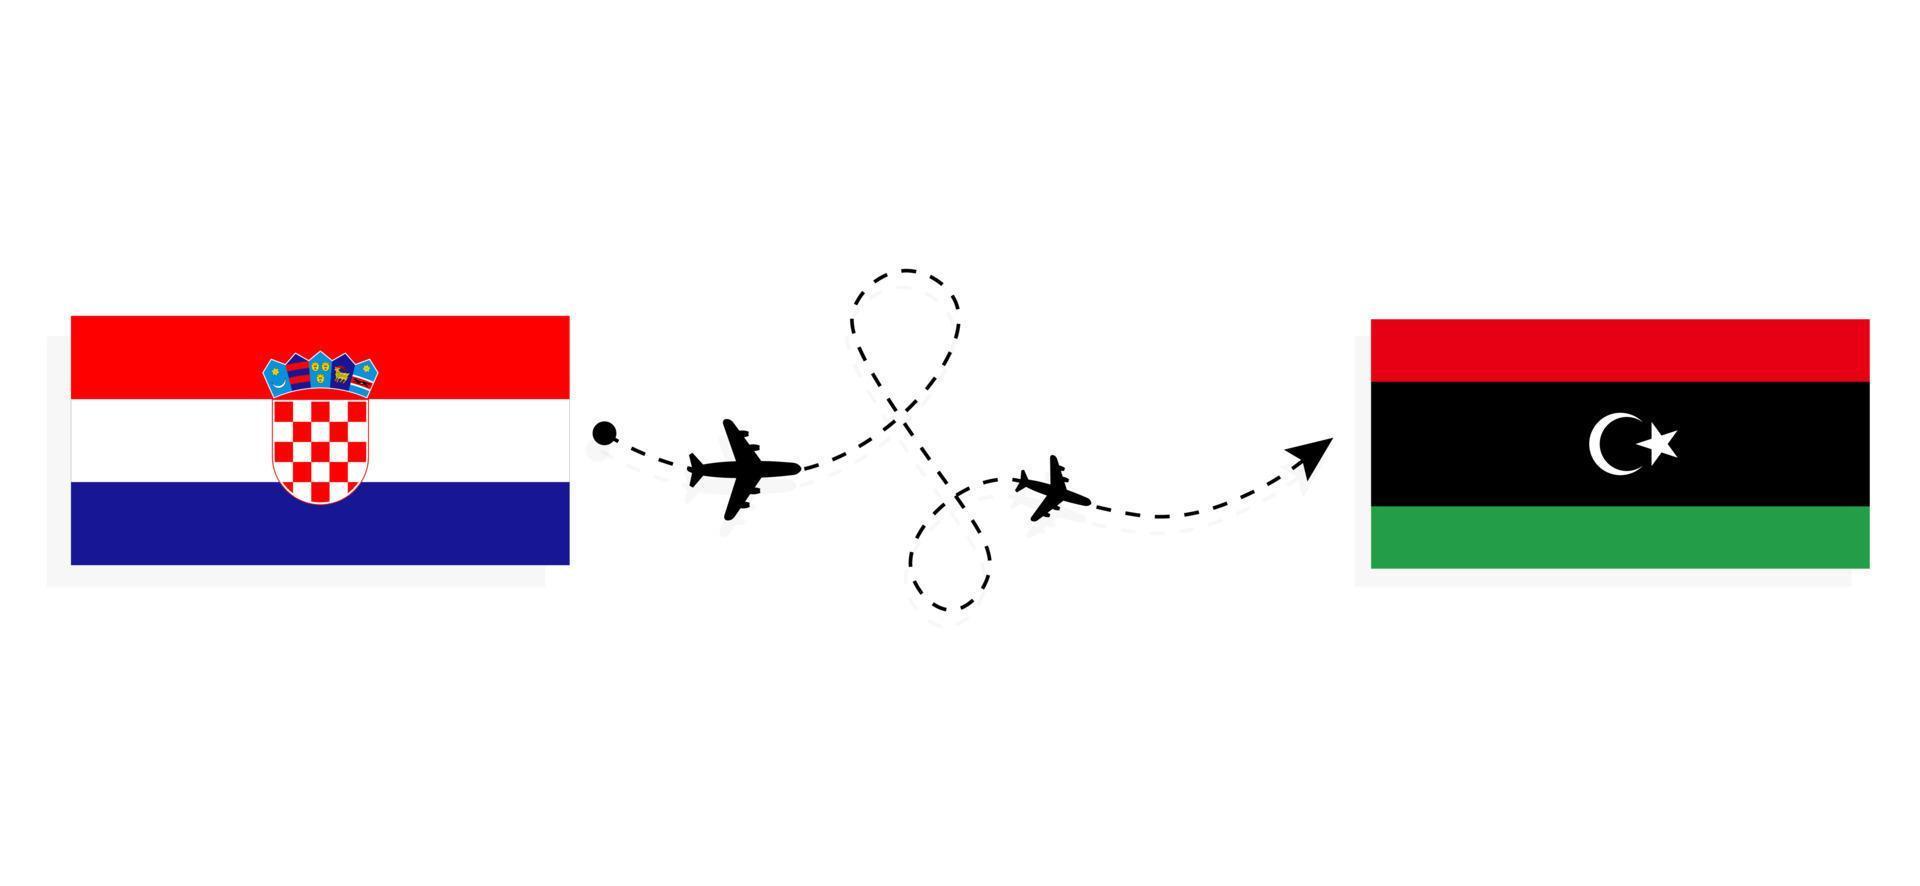 flyg och resor från Kroatien till Libyen med resekoncept för passagerarflygplan vektor